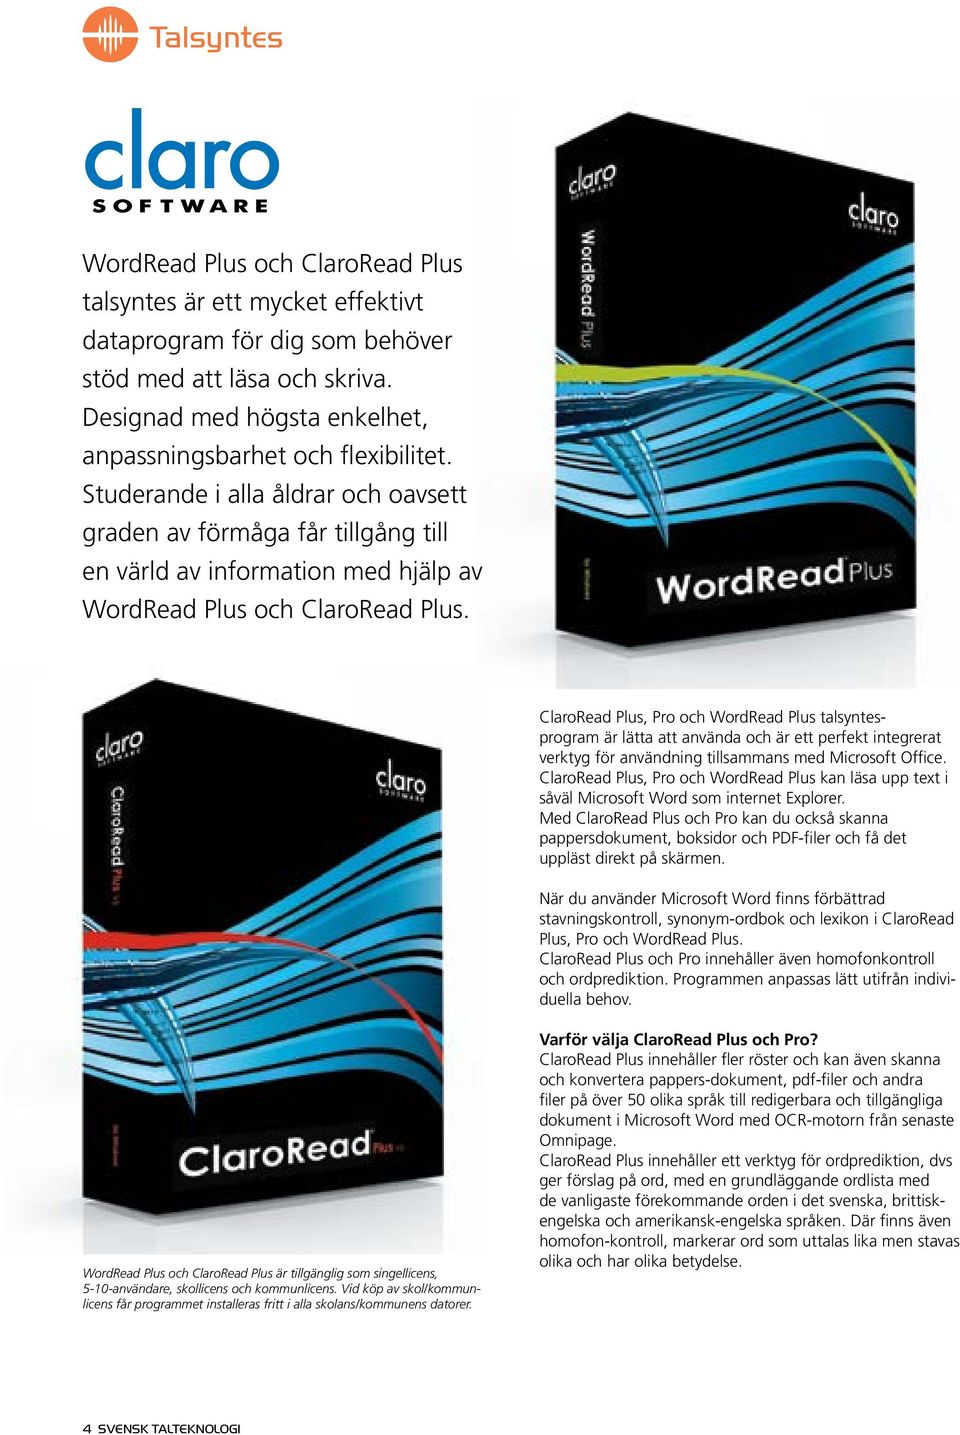 Studerande i alla åldrar och oavsett graden av förmåga får tillgång till en värld av information med hjälp av WordRead Plus och ClaroRead Plus.